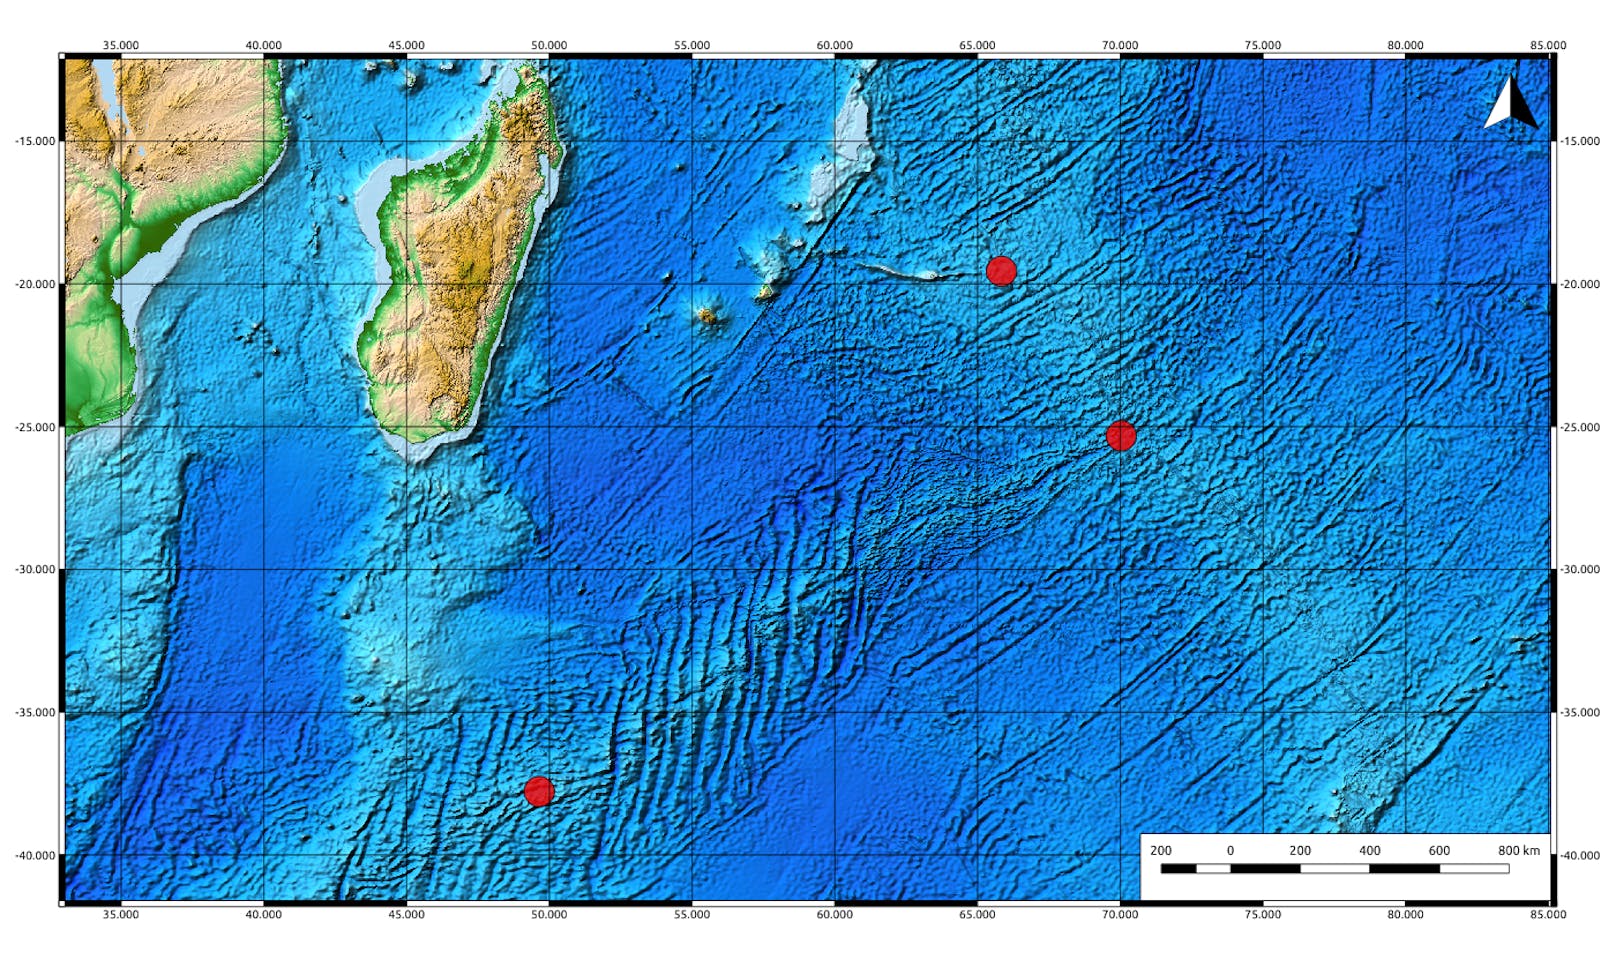 Schuppenfußschnecken (Chrysomallon squamiferum) leben zwischen 2.400 und 2.900 Meter unter der Meeresoberfläche in der Nähe von "Raucher" genannten hydrothermalen Quellen.